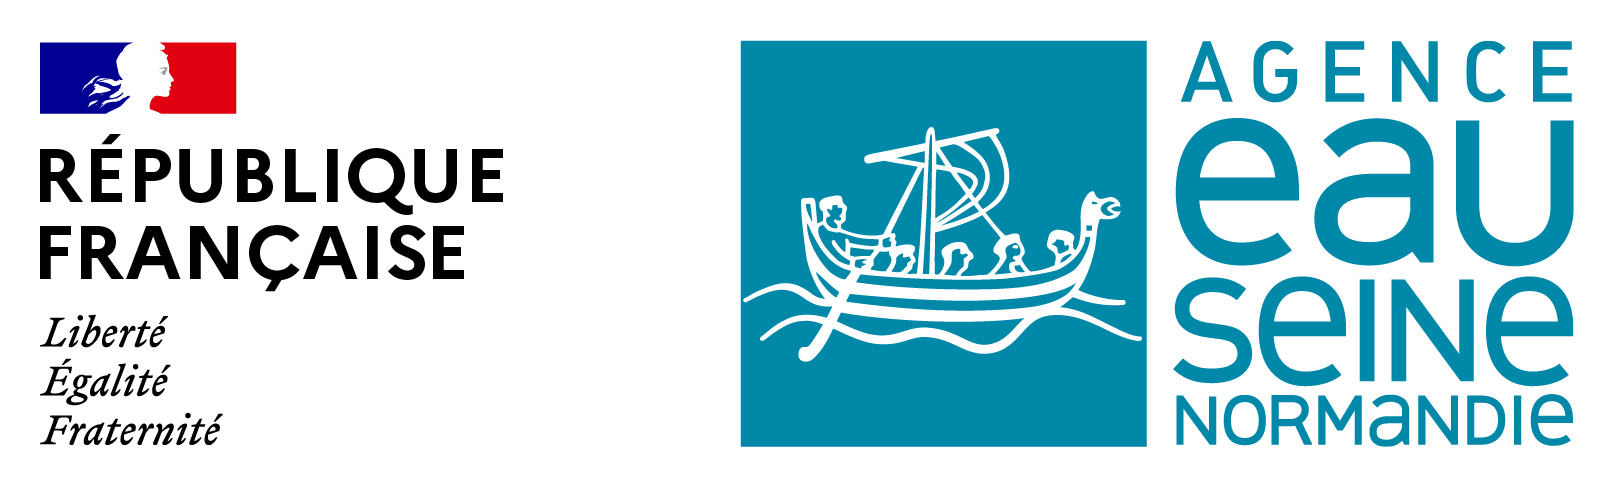 logo Agence de l’eau Seine-Normandie